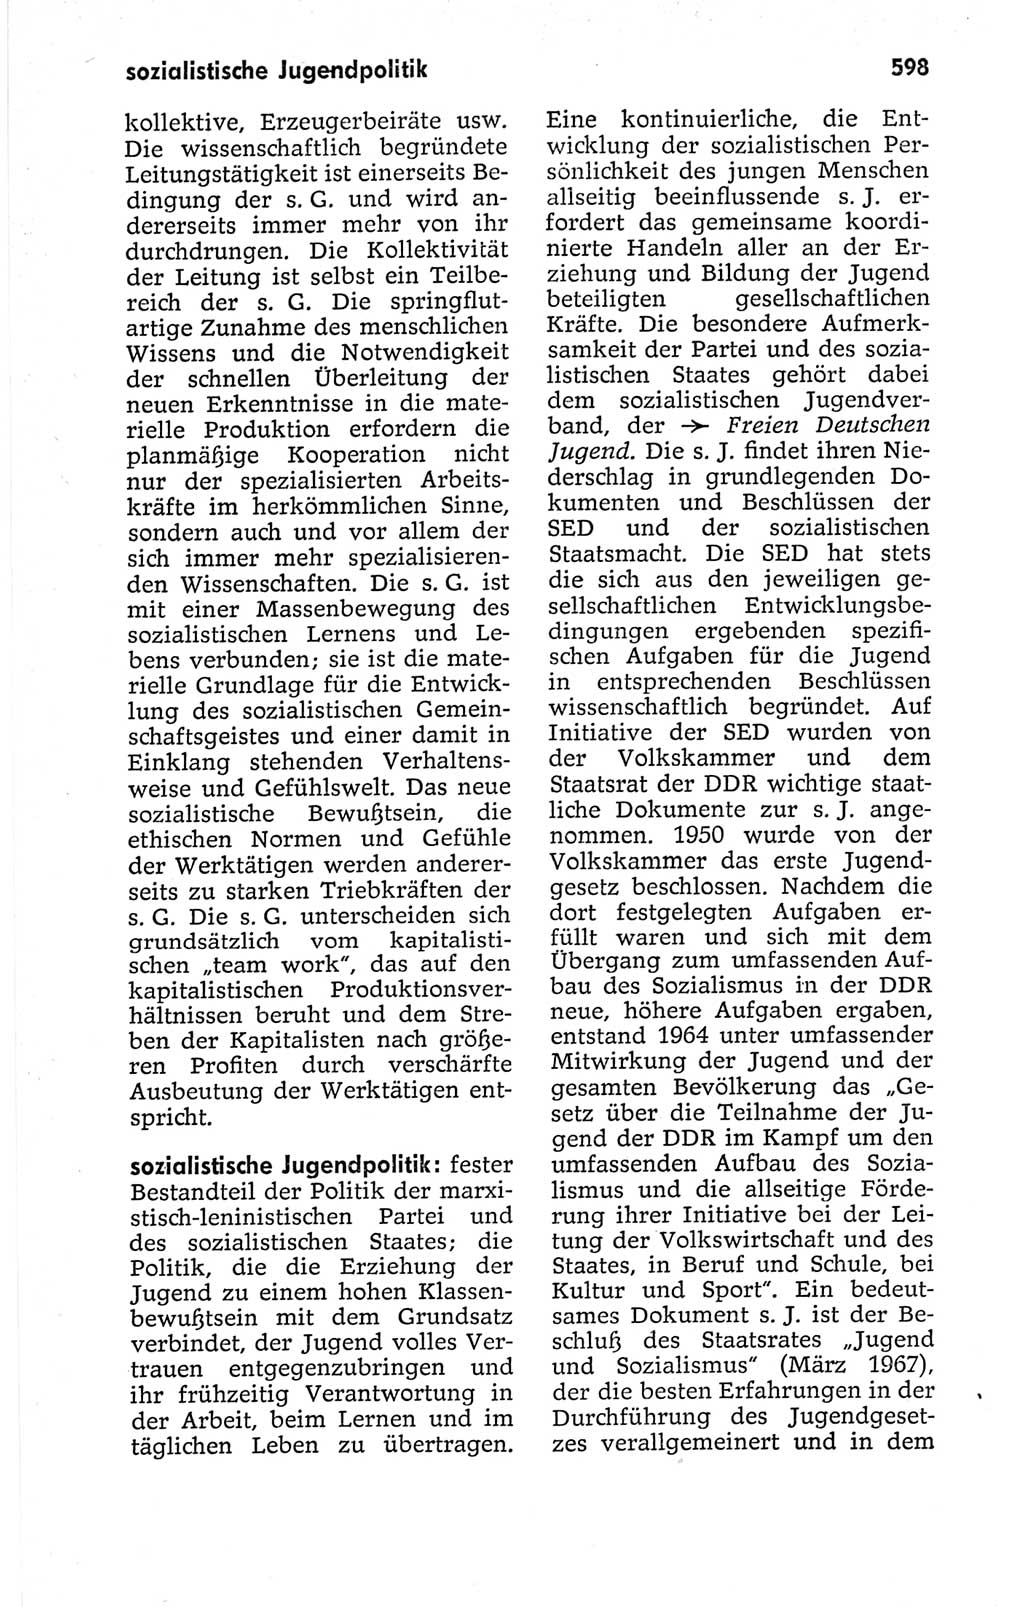 Kleines politisches Wörterbuch [Deutsche Demokratische Republik (DDR)] 1967, Seite 598 (Kl. pol. Wb. DDR 1967, S. 598)